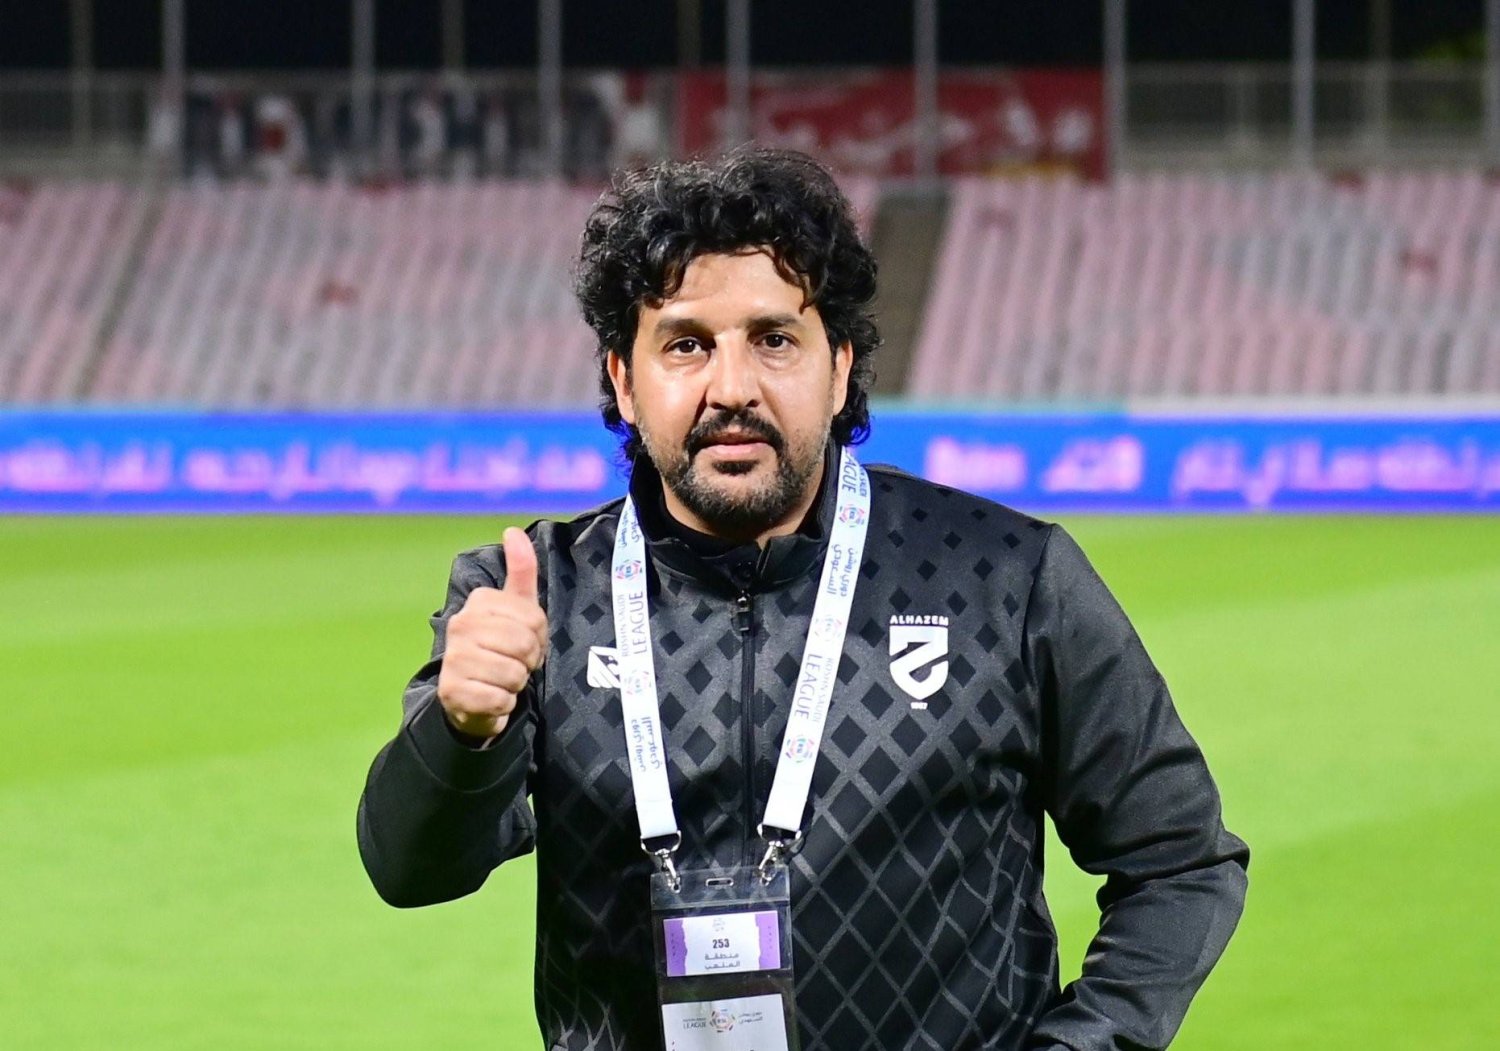 صالح المحمدي يقود فريق الحزم للفوز بعد غياب طويل (الدوري السعودي)